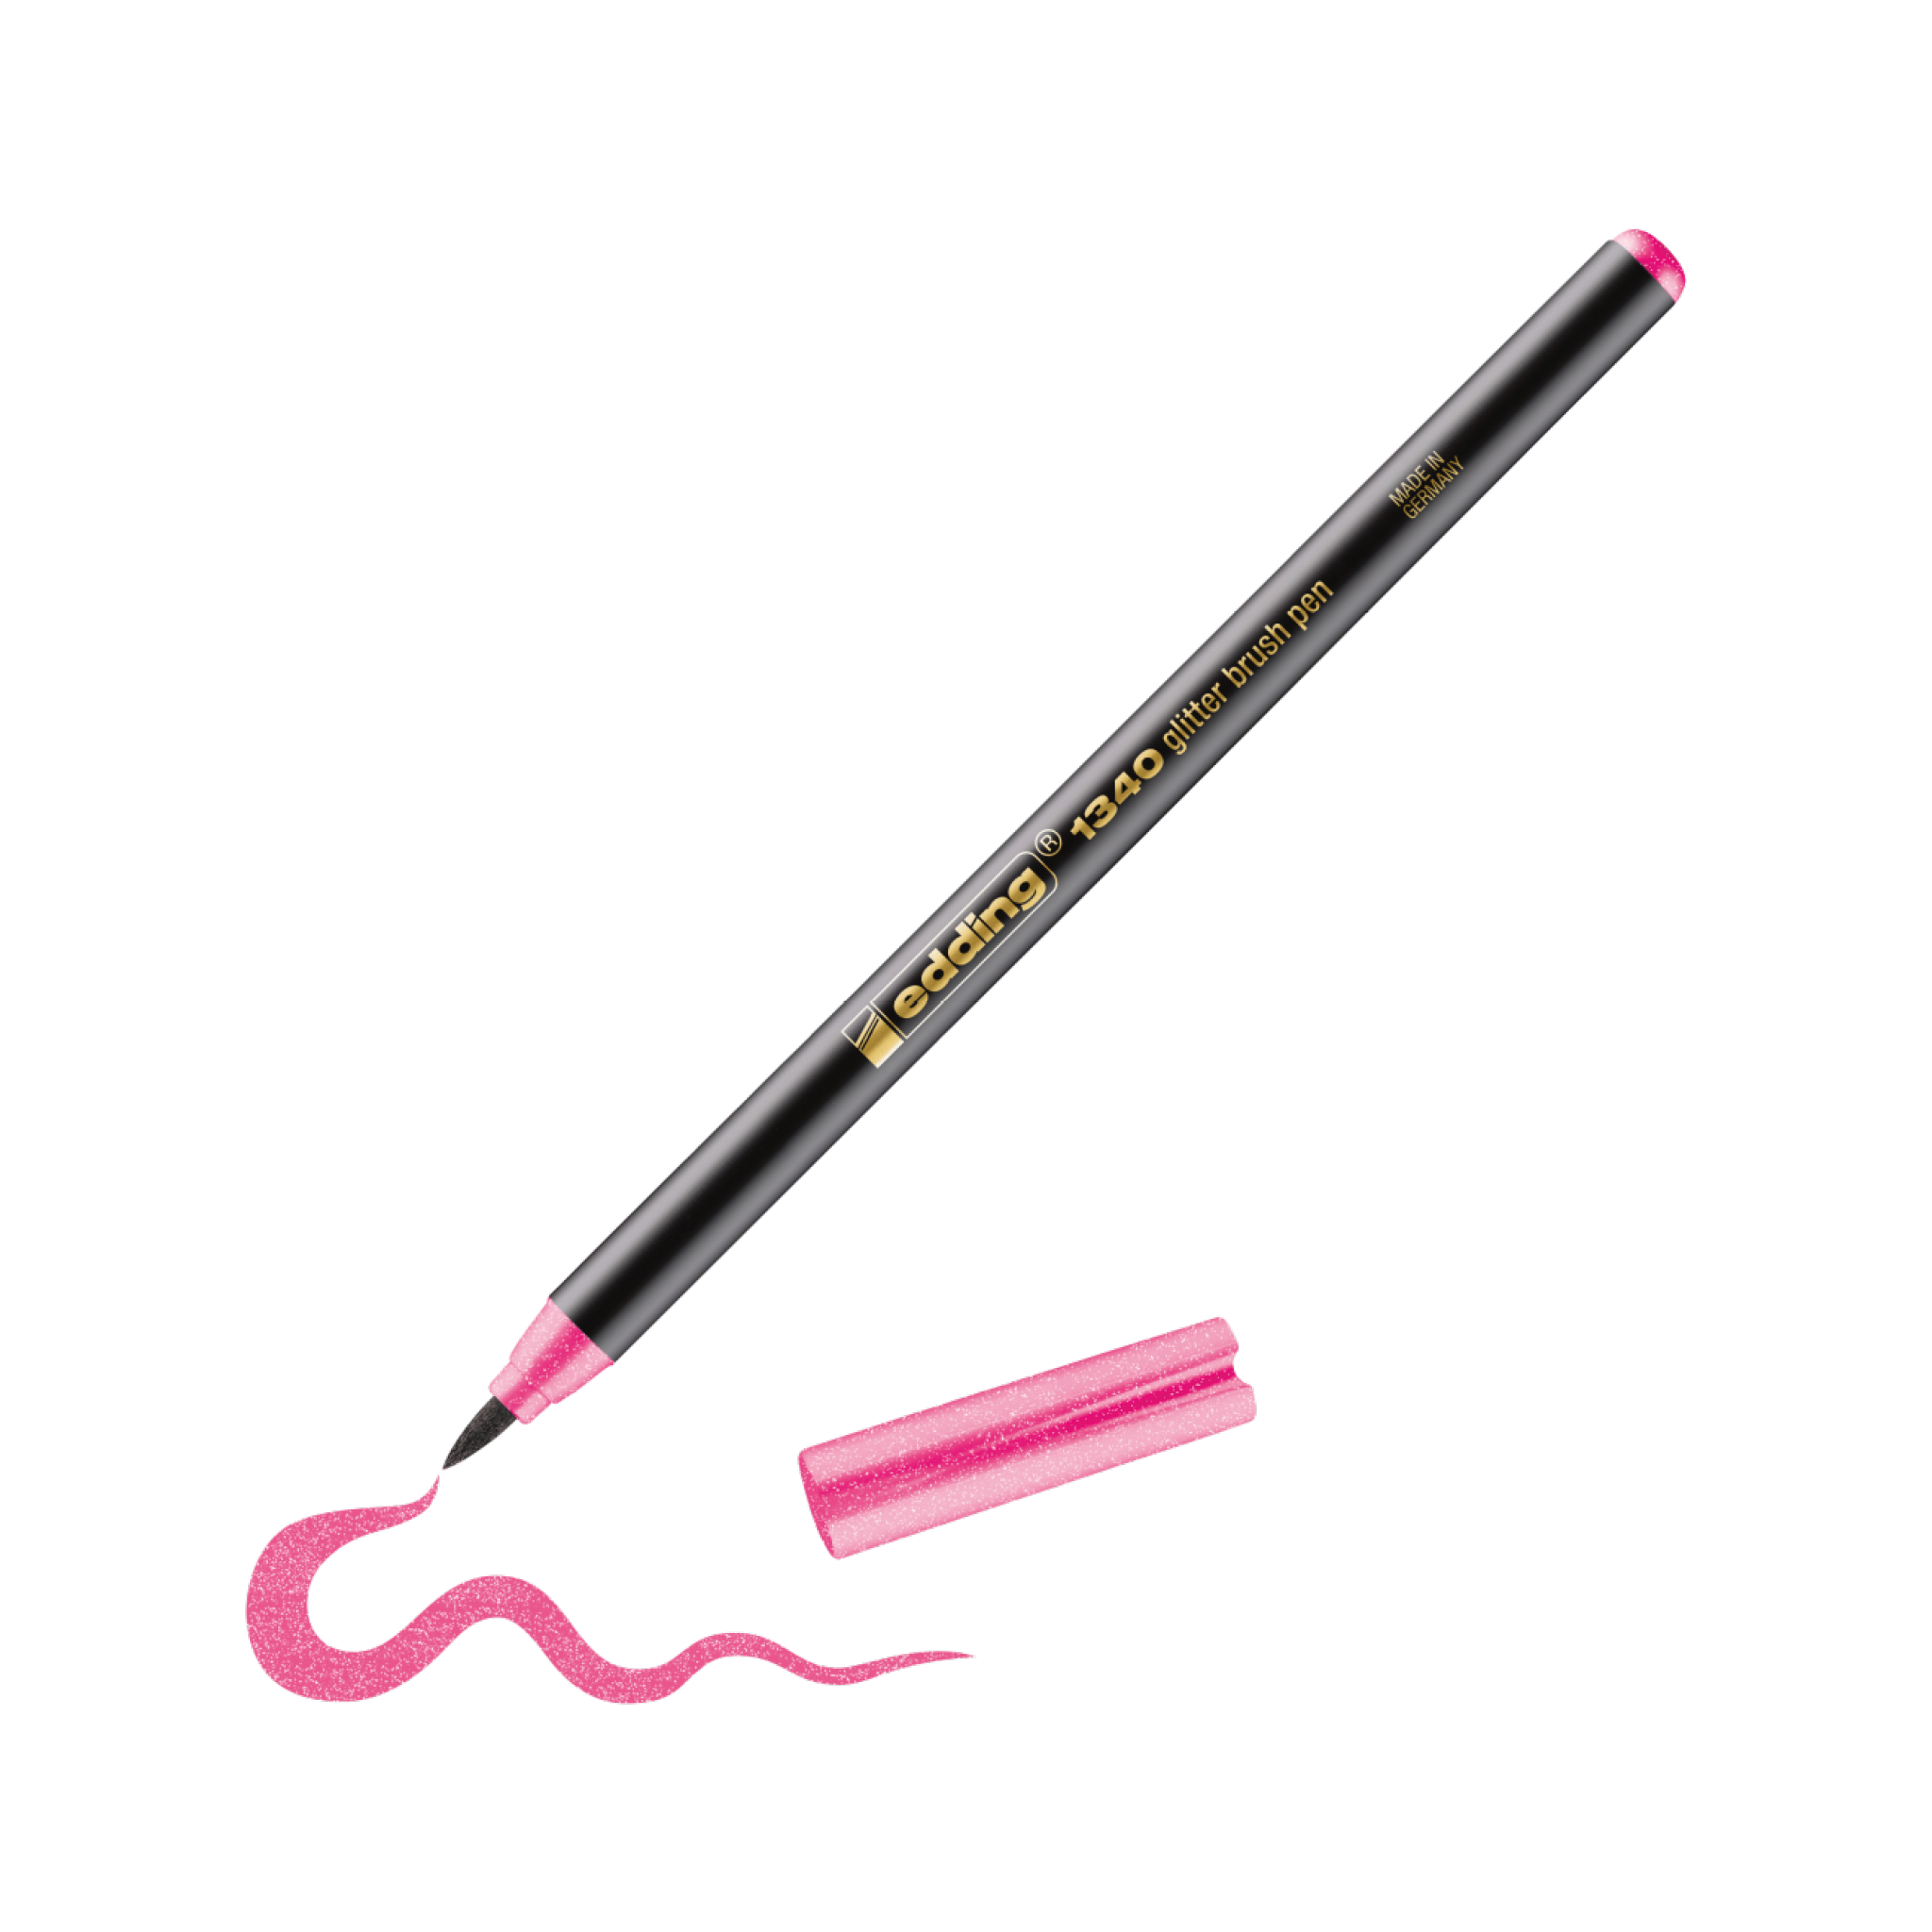 Ein pinkfarbener edding 1340 Glitzer-Pinselstift mit präziser Spitze, ideal zum Handlettering, zum Zeichnen einer verschnörkelten Linie auf weißem Untergrund. Daneben befindet sich eine seitlich angebrachte Kappe.